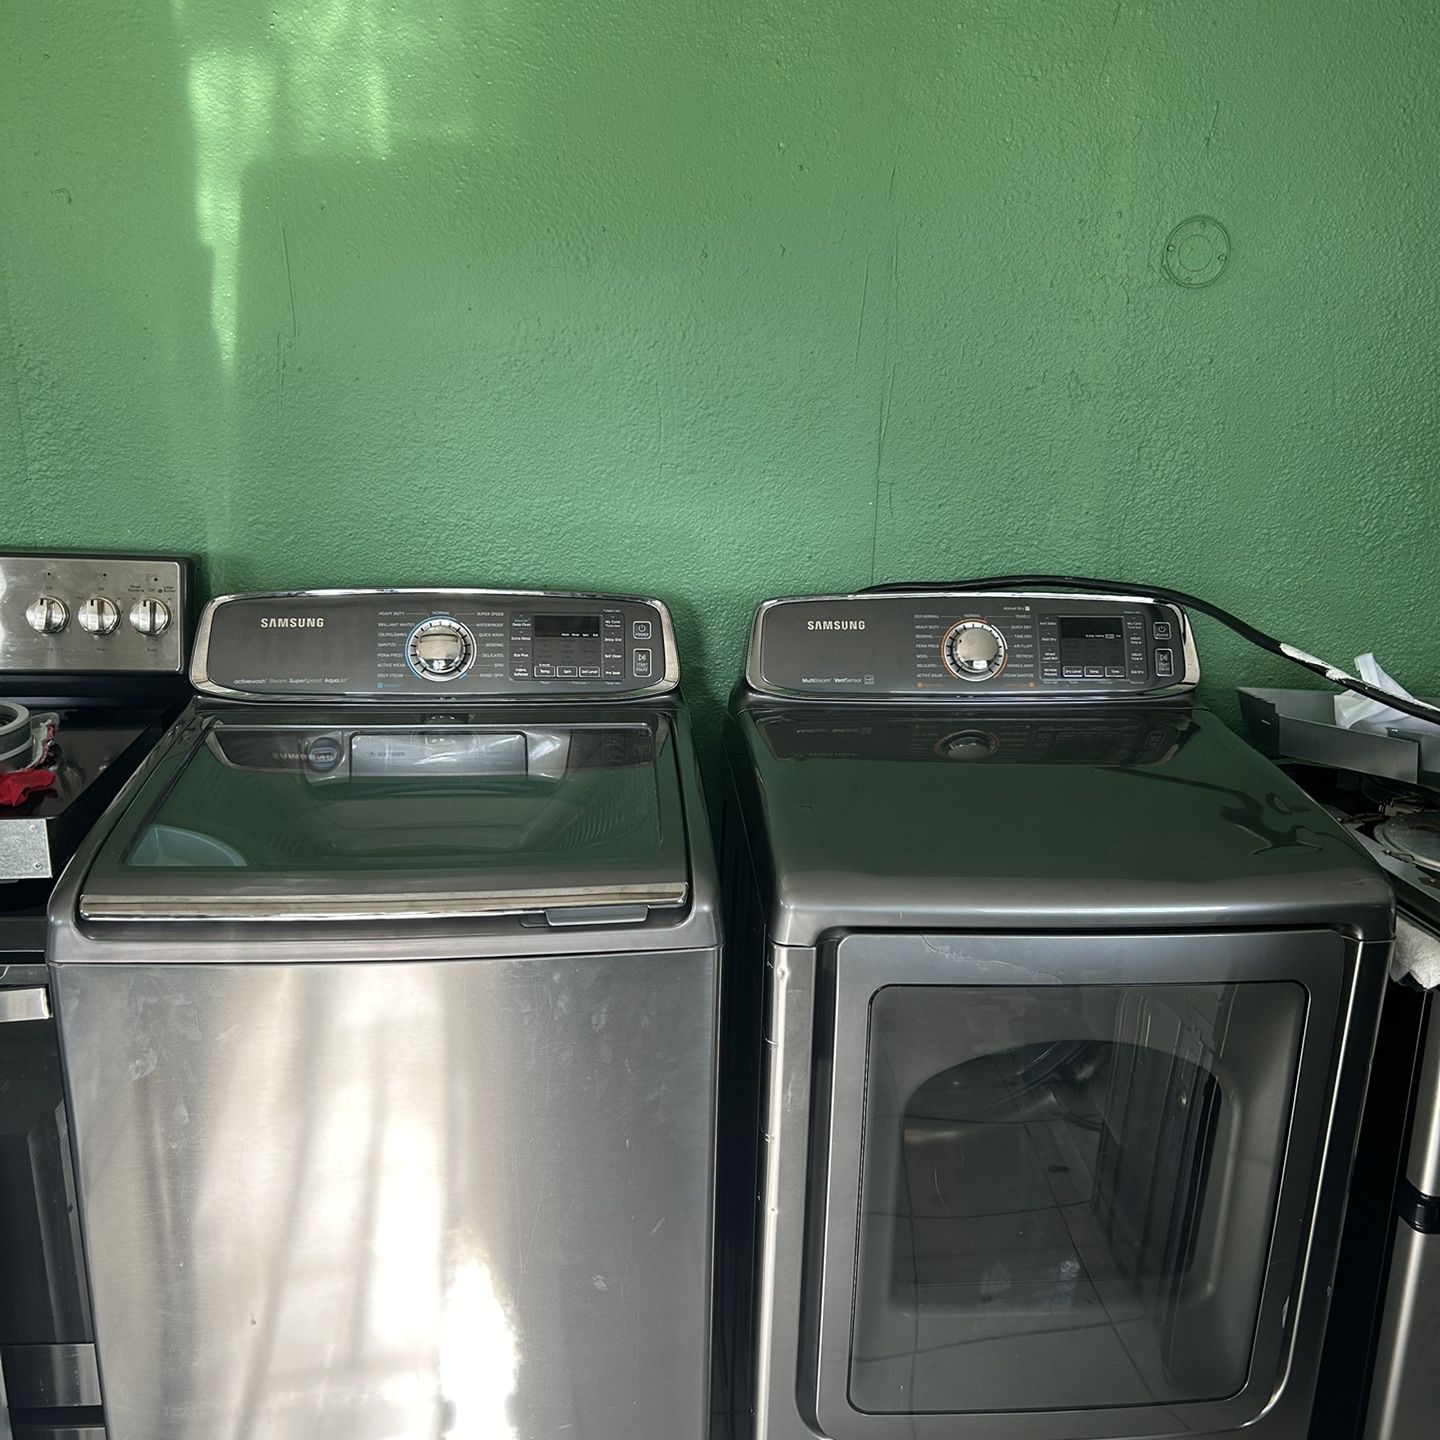 Samsung Washing Machine And Dryer